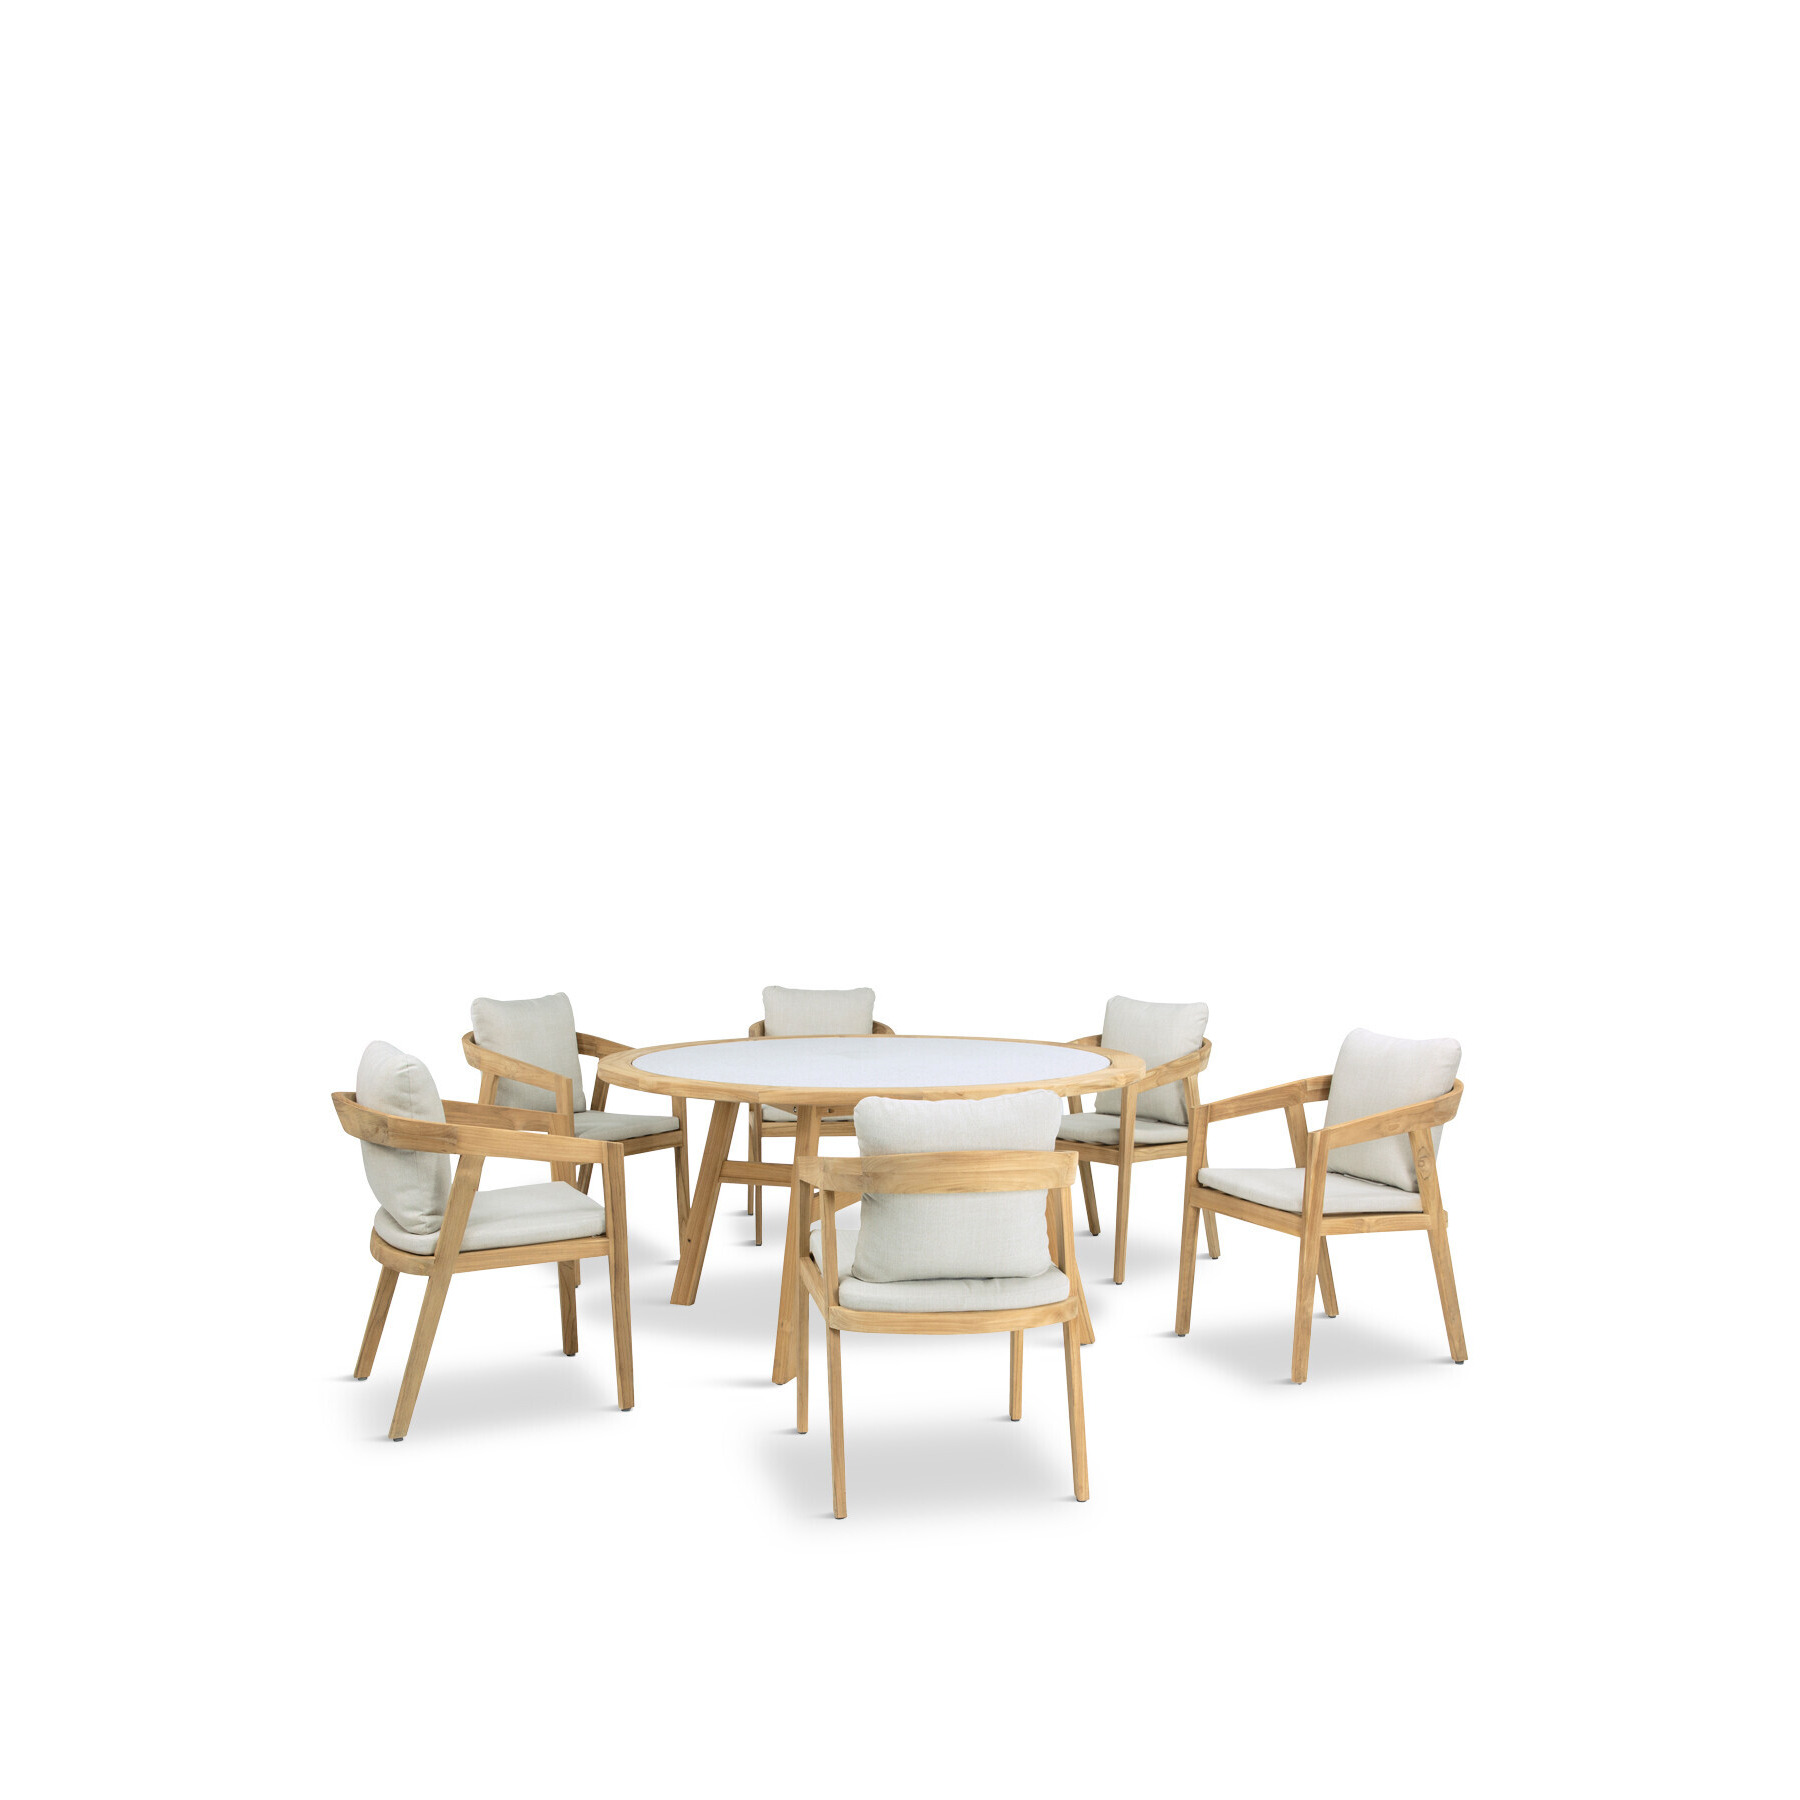 Kettler Kubu 6 Seat Round Dining Set Grey - image 1